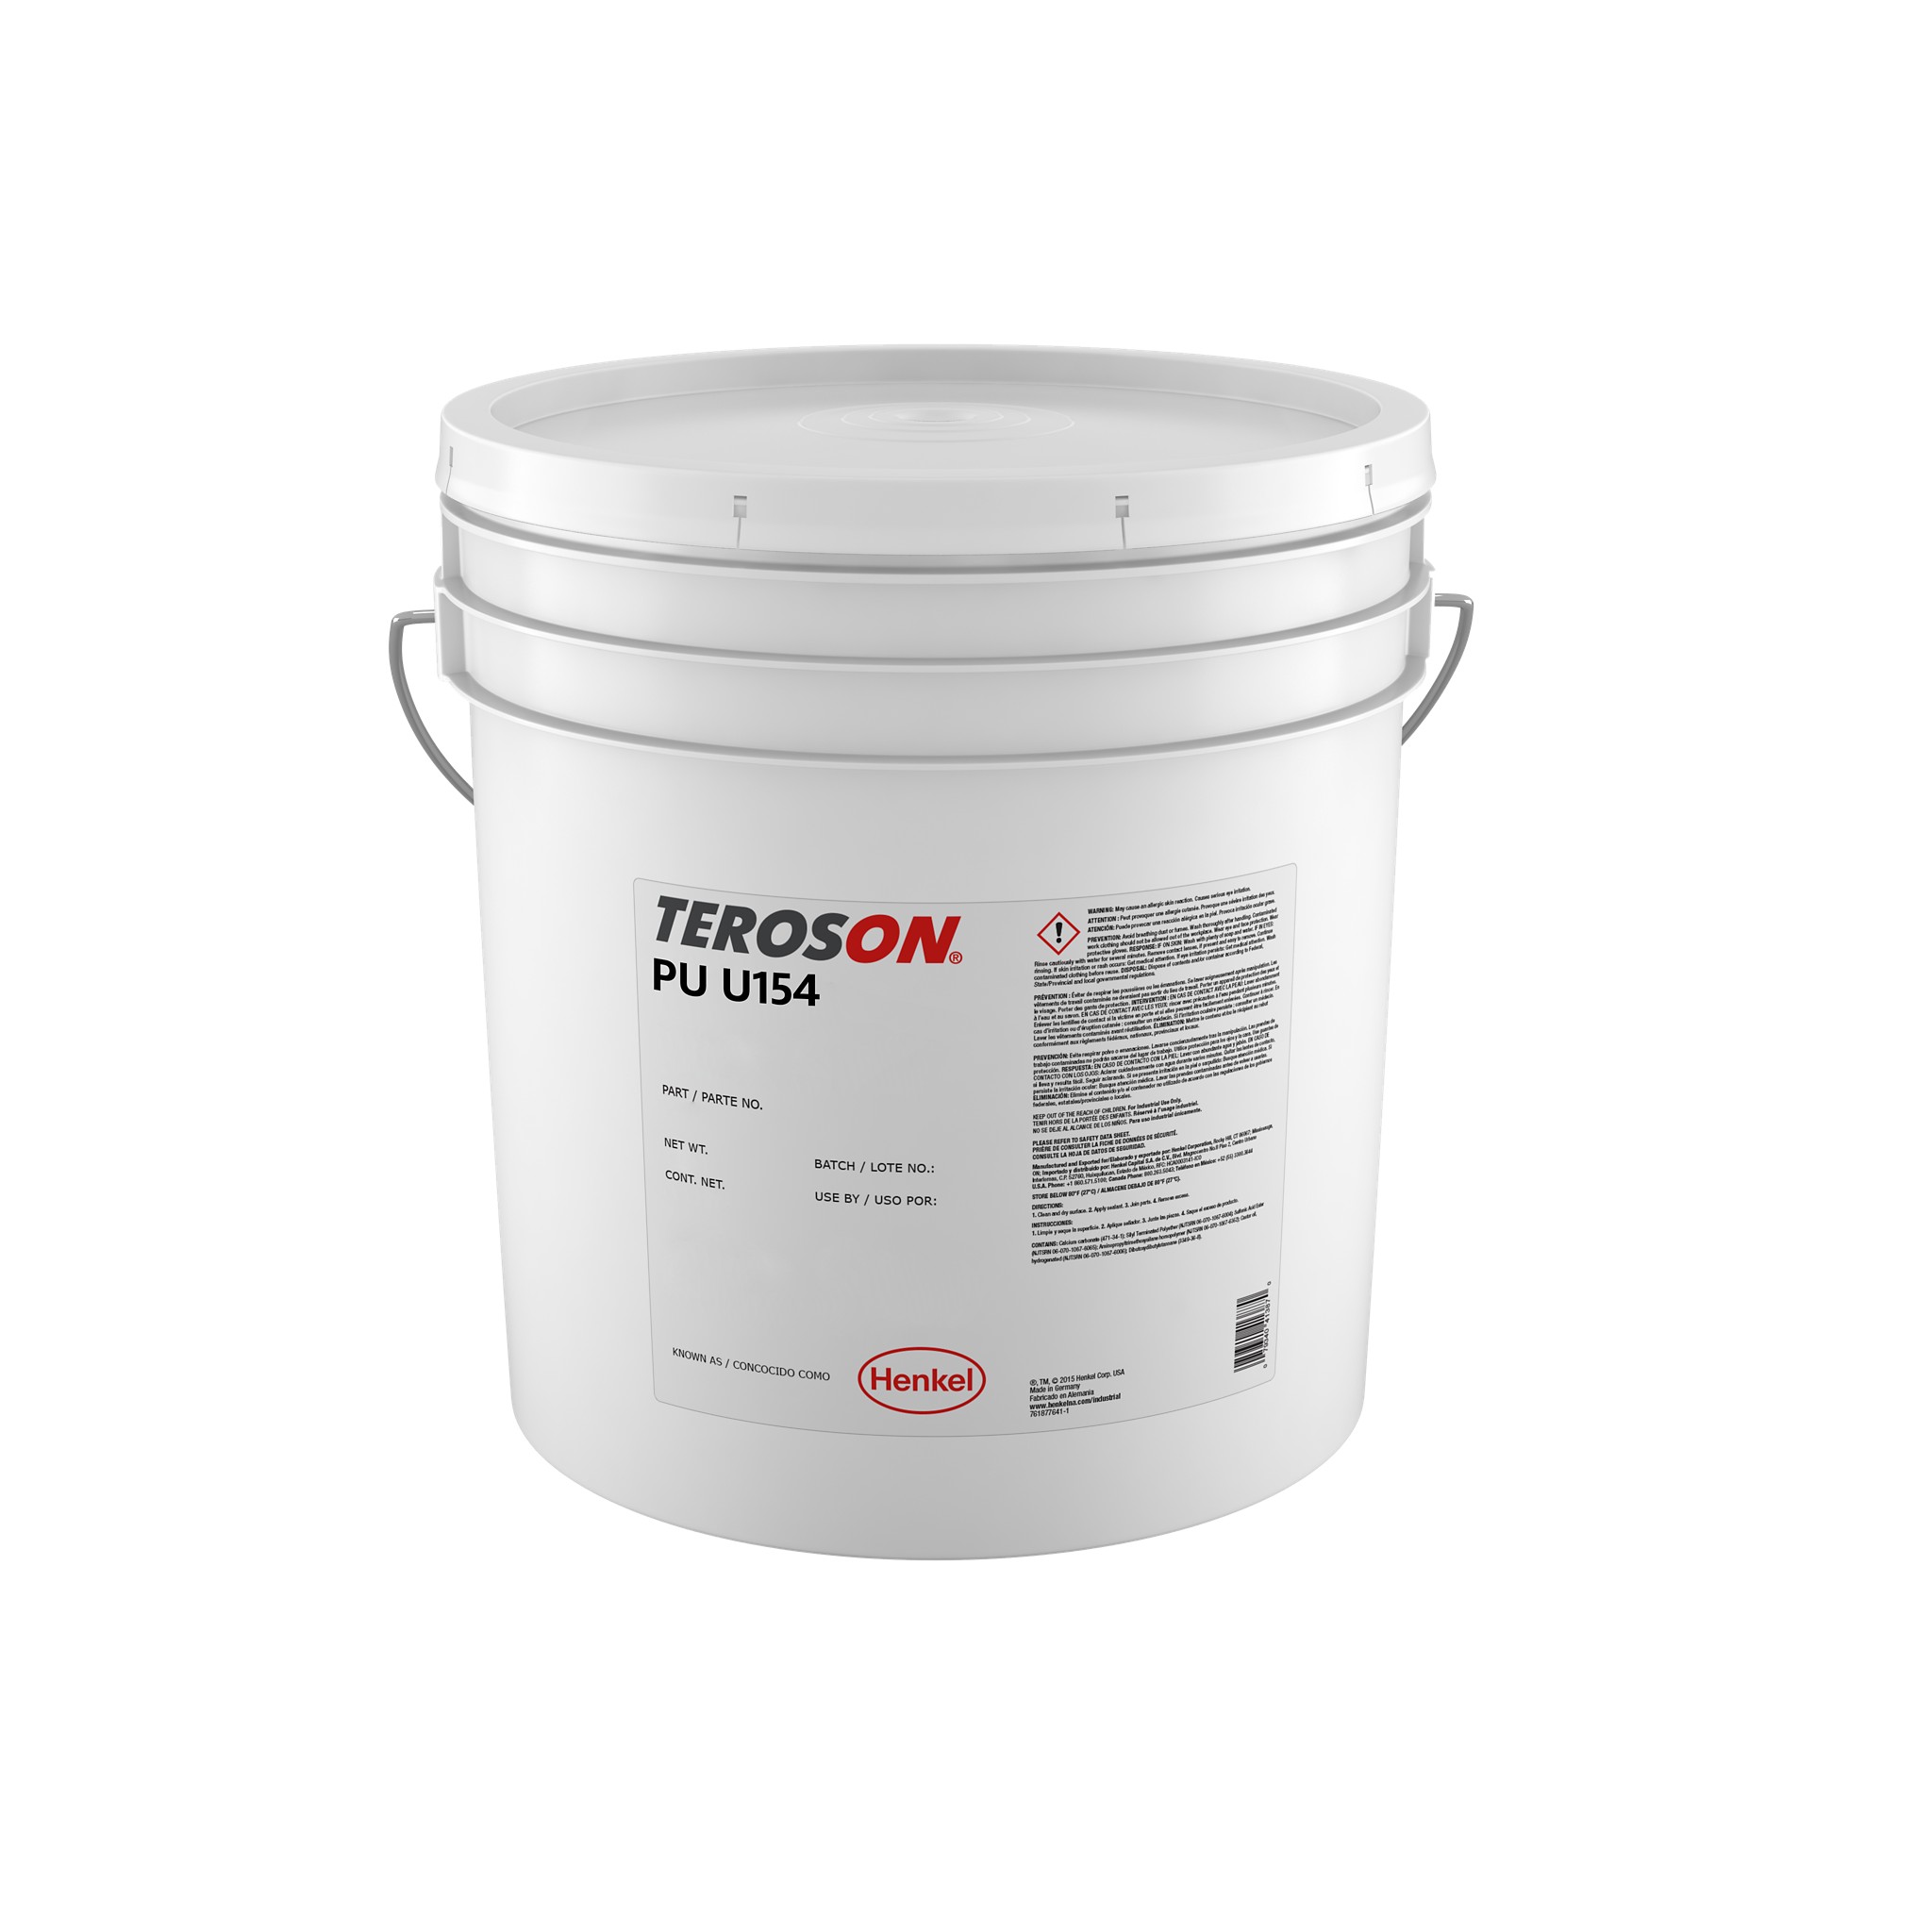 TEROSON® PU U154 - Henkel Adhesives